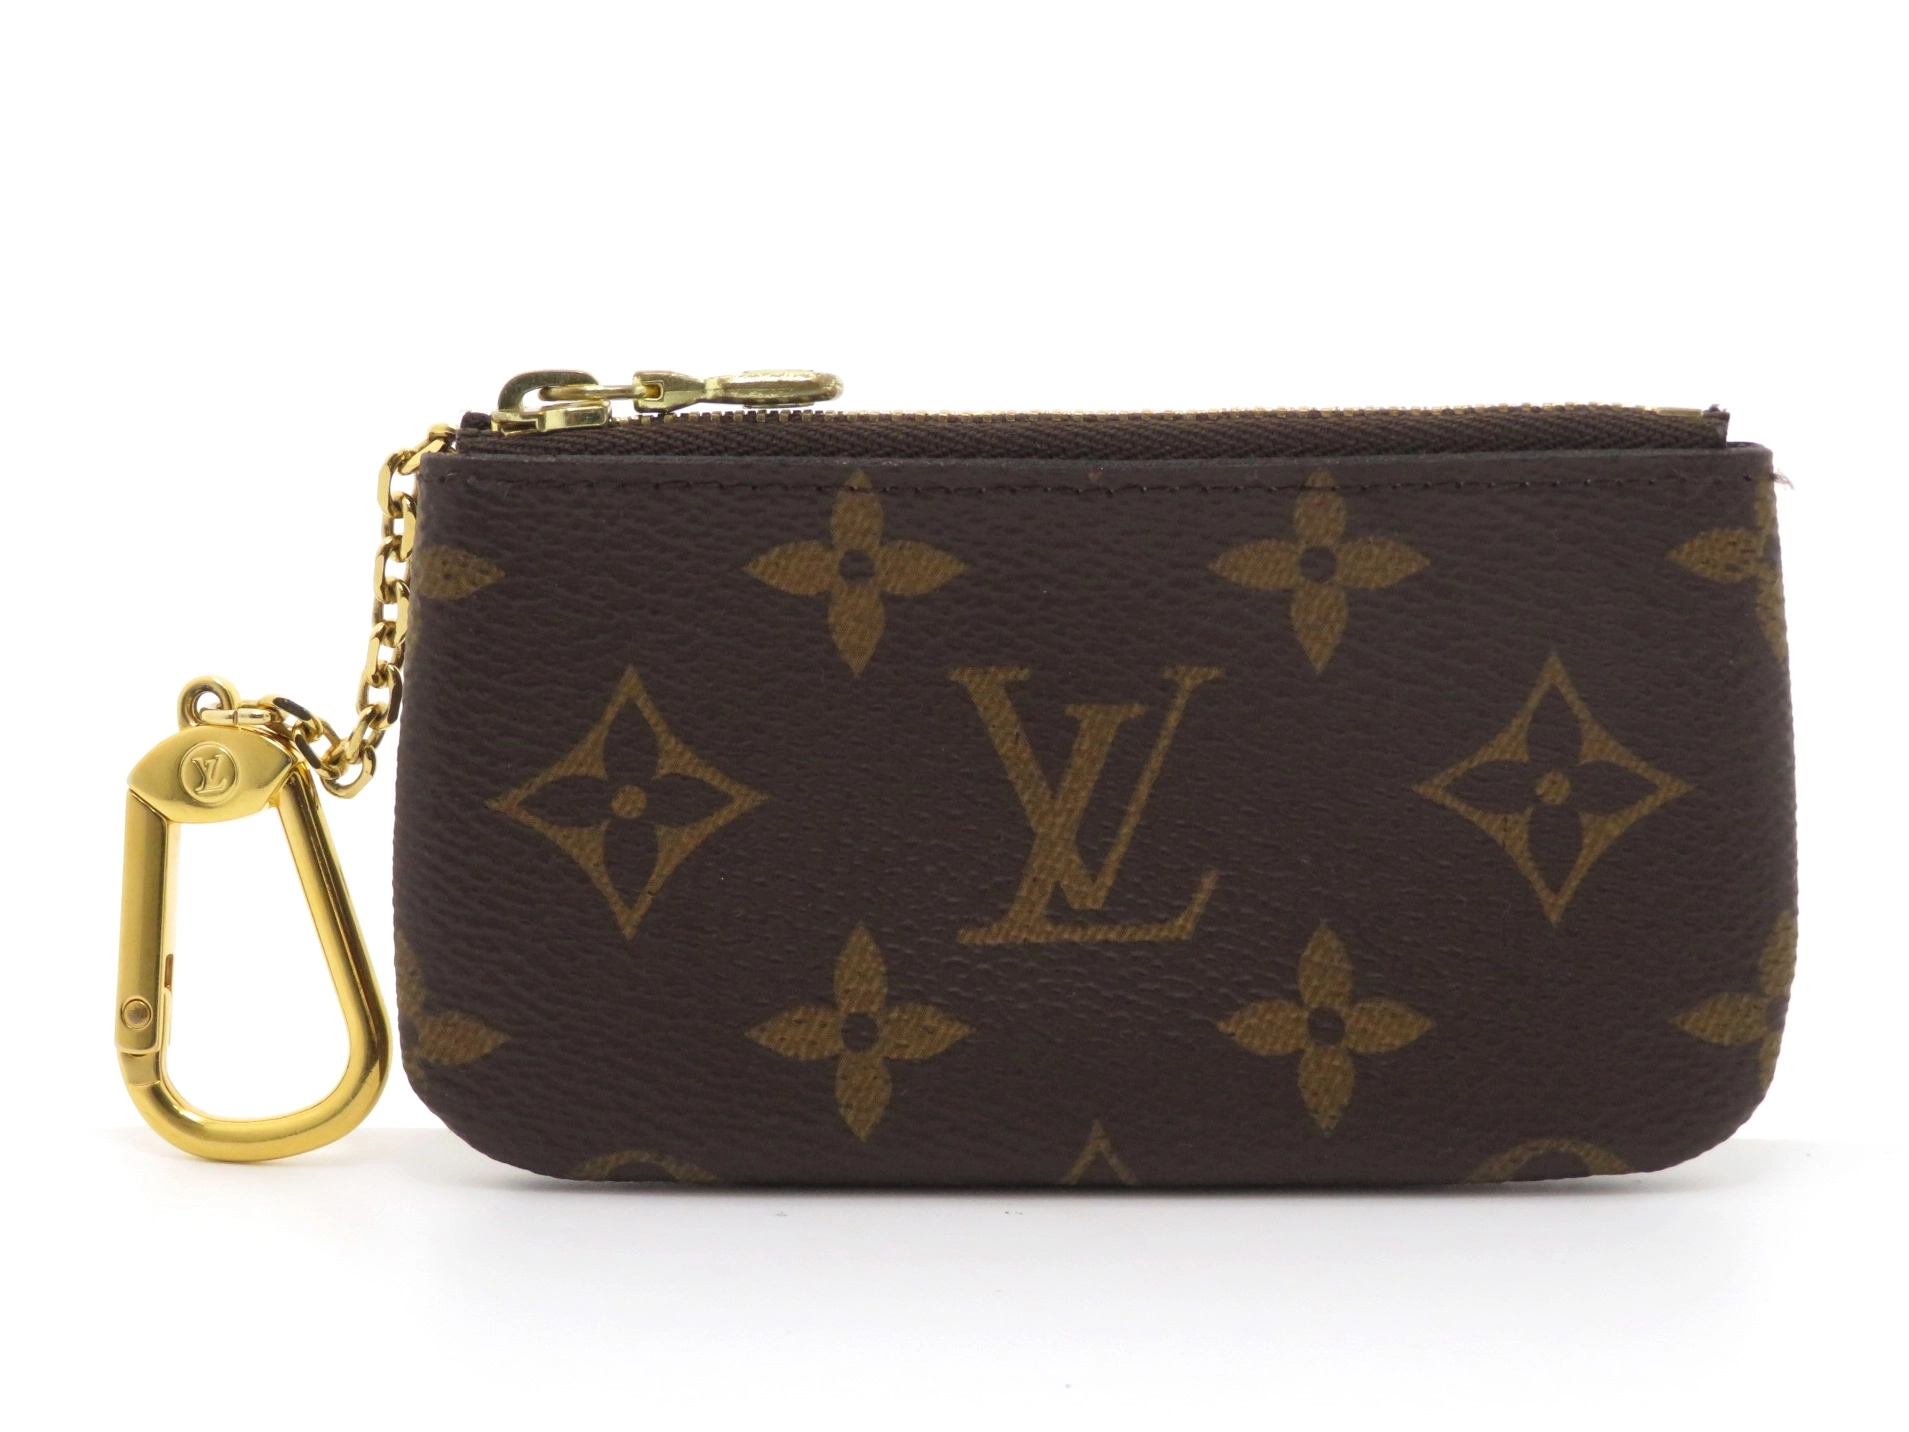 Louis Vuitton ルイ・ヴィトン ポシェットクレ・モノグラム箱と保存袋とともに発送します